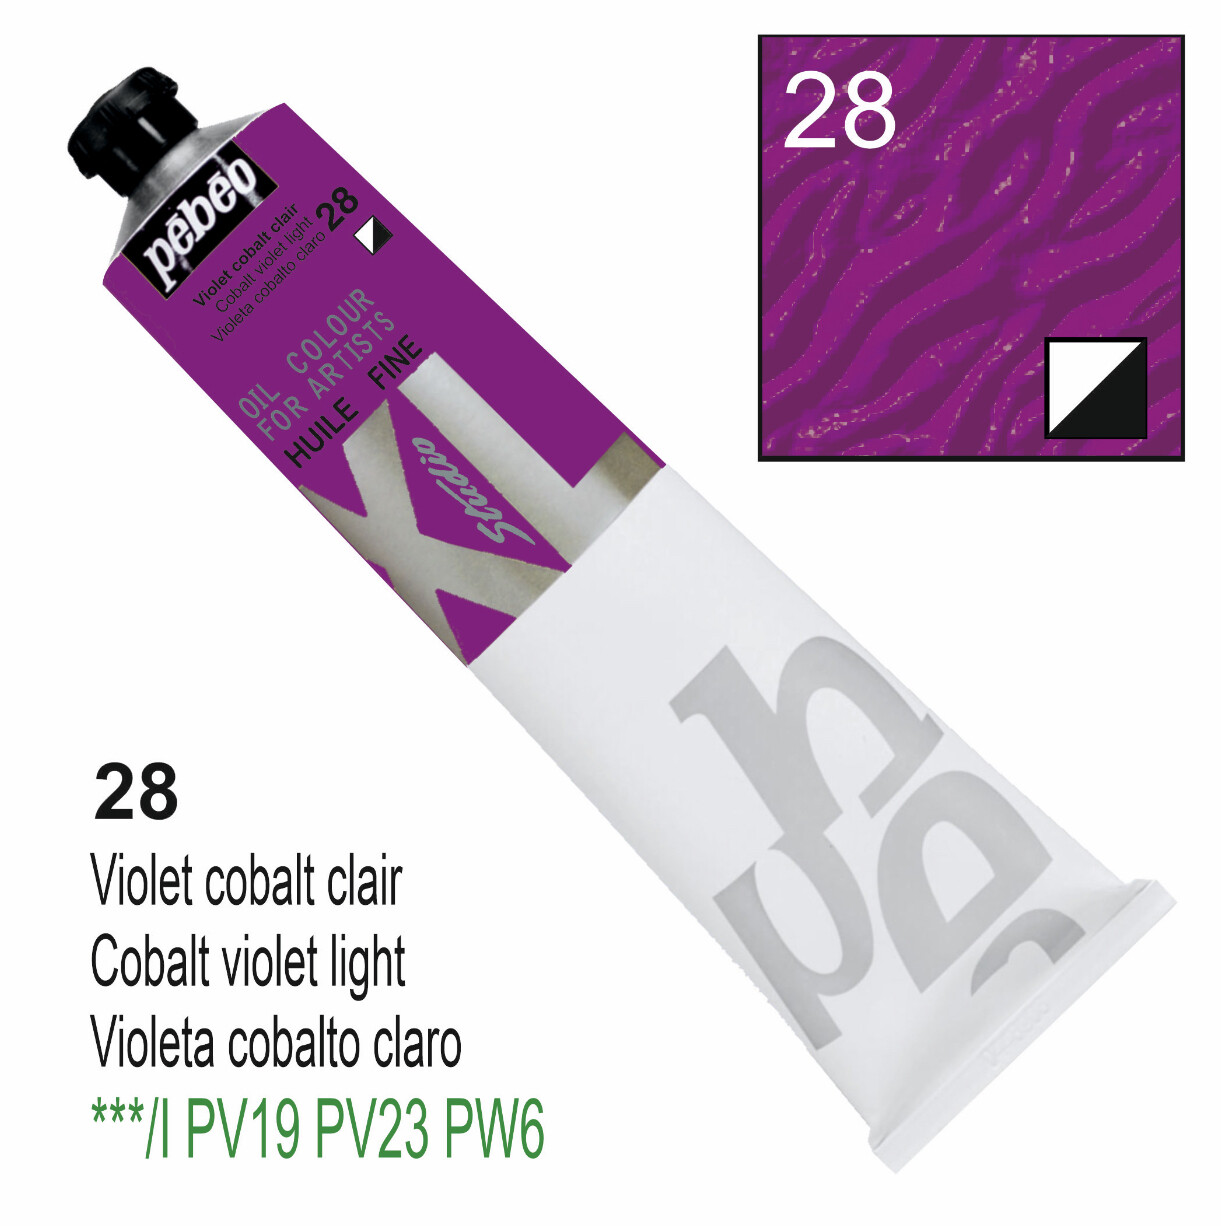 XL Studio Oil Colors Fine - Cobalt violet light No. 28, 200 ml Tube